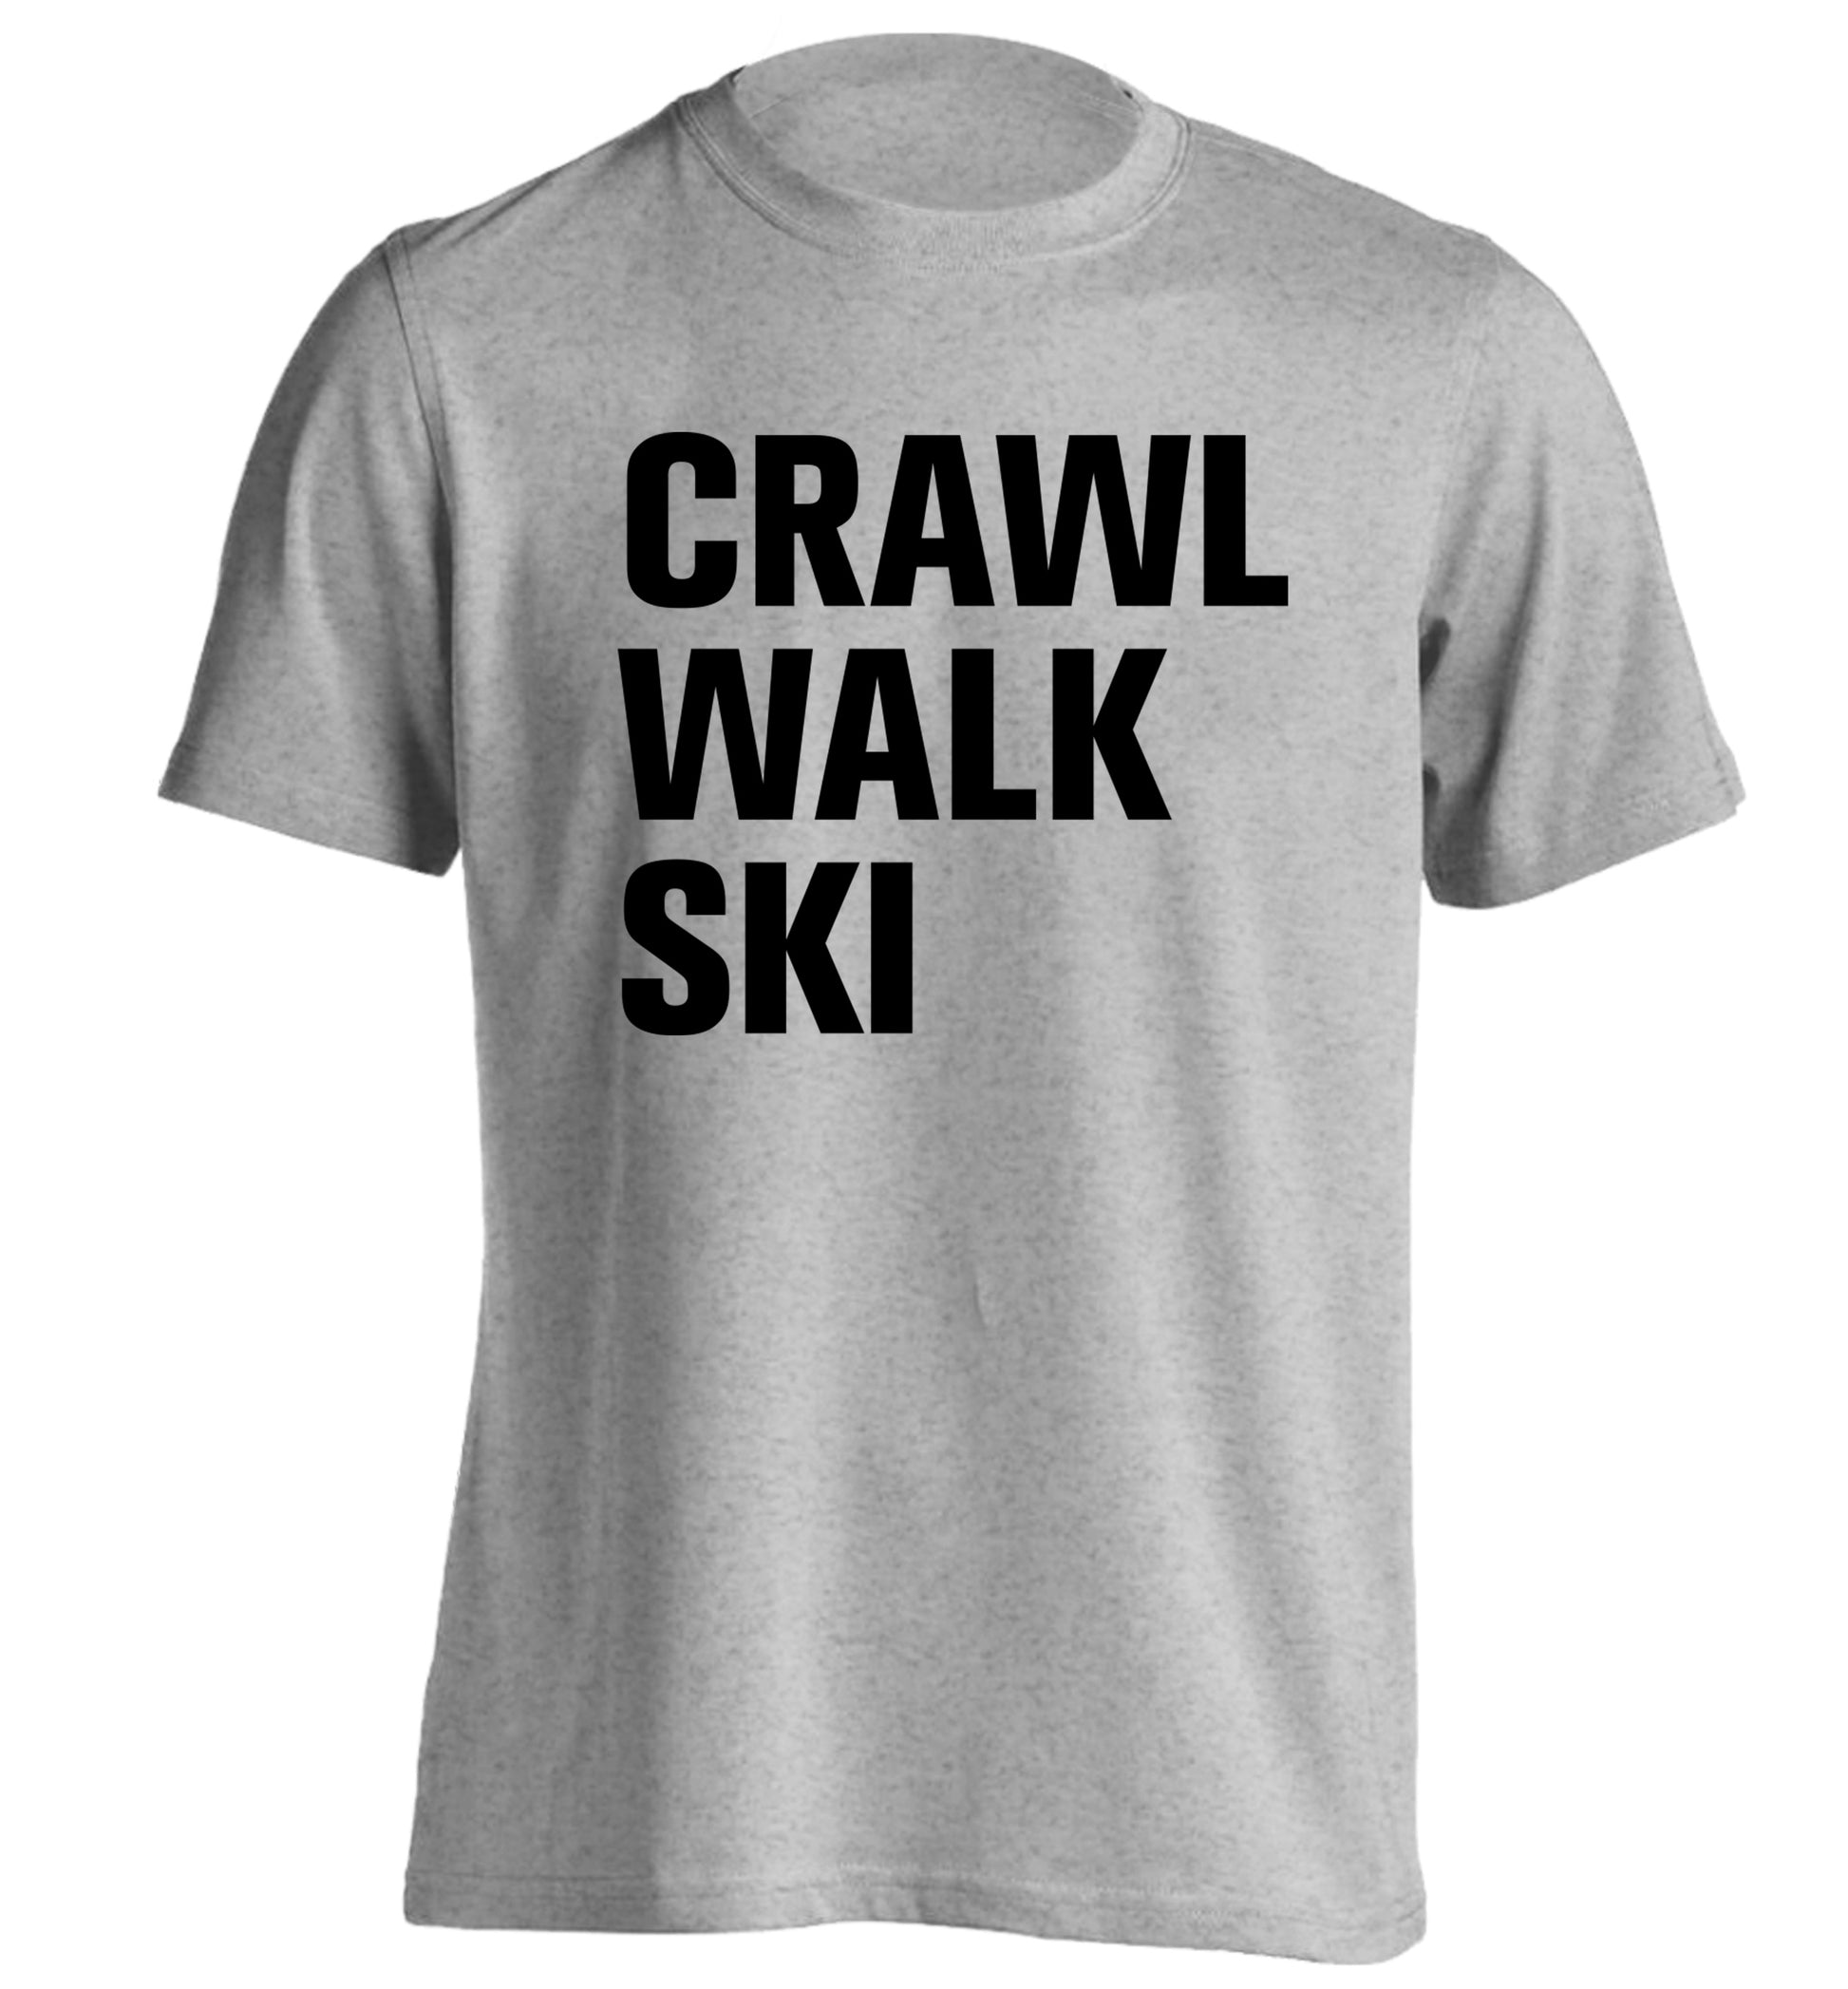 Crawl walk ski adults unisexgrey Tshirt 2XL